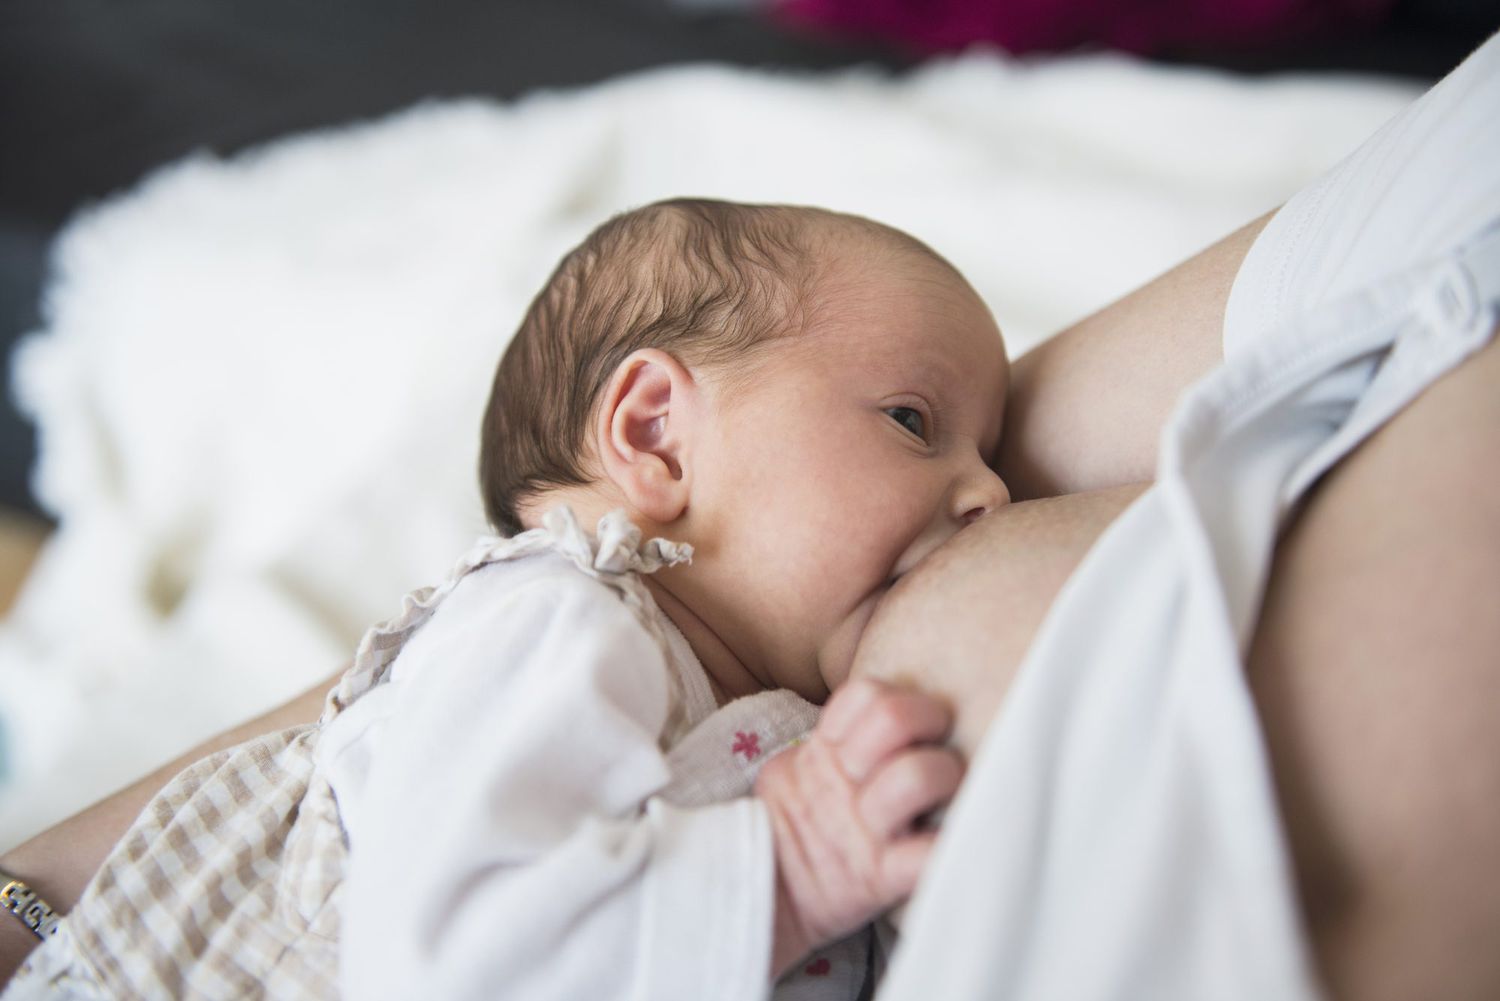 amy dales add photo mom breastfeeding grown son